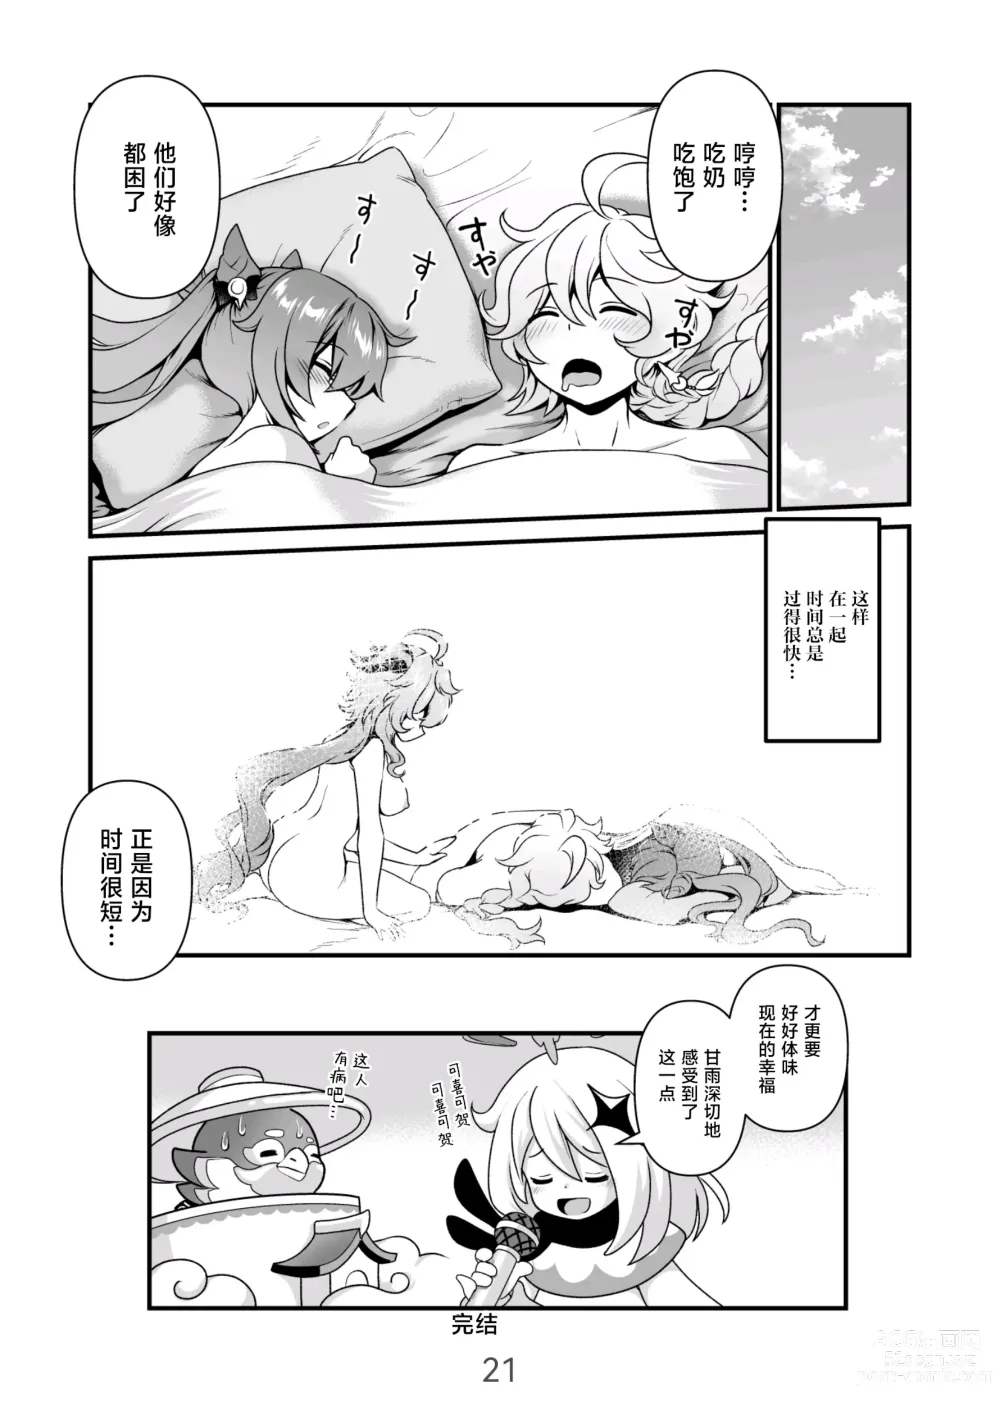 Page 21 of doujinshi Koisuru Kirin no Amaama Milk